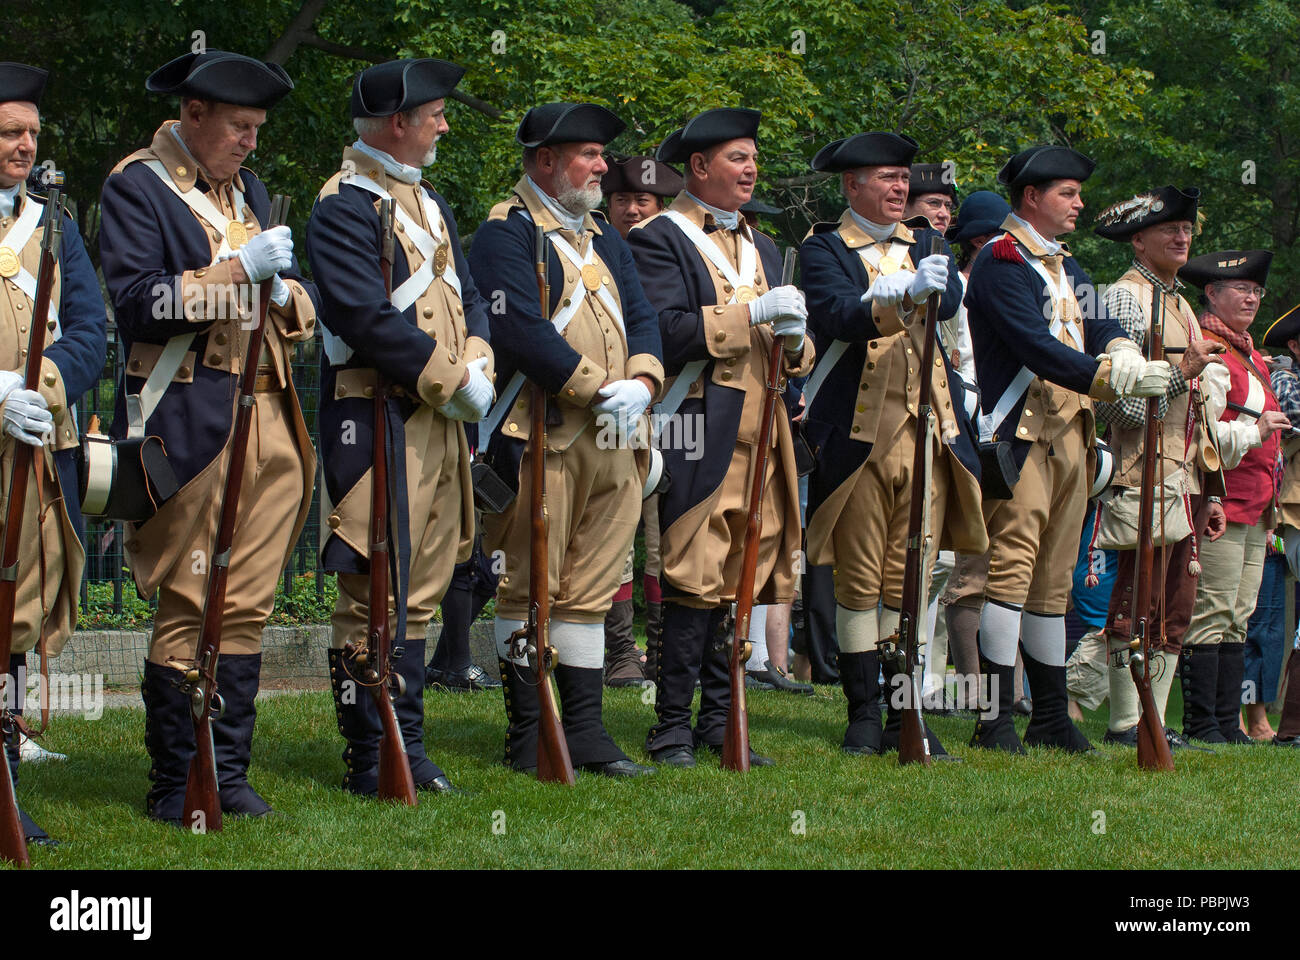 Les hommes en uniforme militaire pour rejouer la guerre d'Indépendance américaine, Lexington Battle Green, Lexington, comté de Middlesex, Massachusetts, USA Banque D'Images